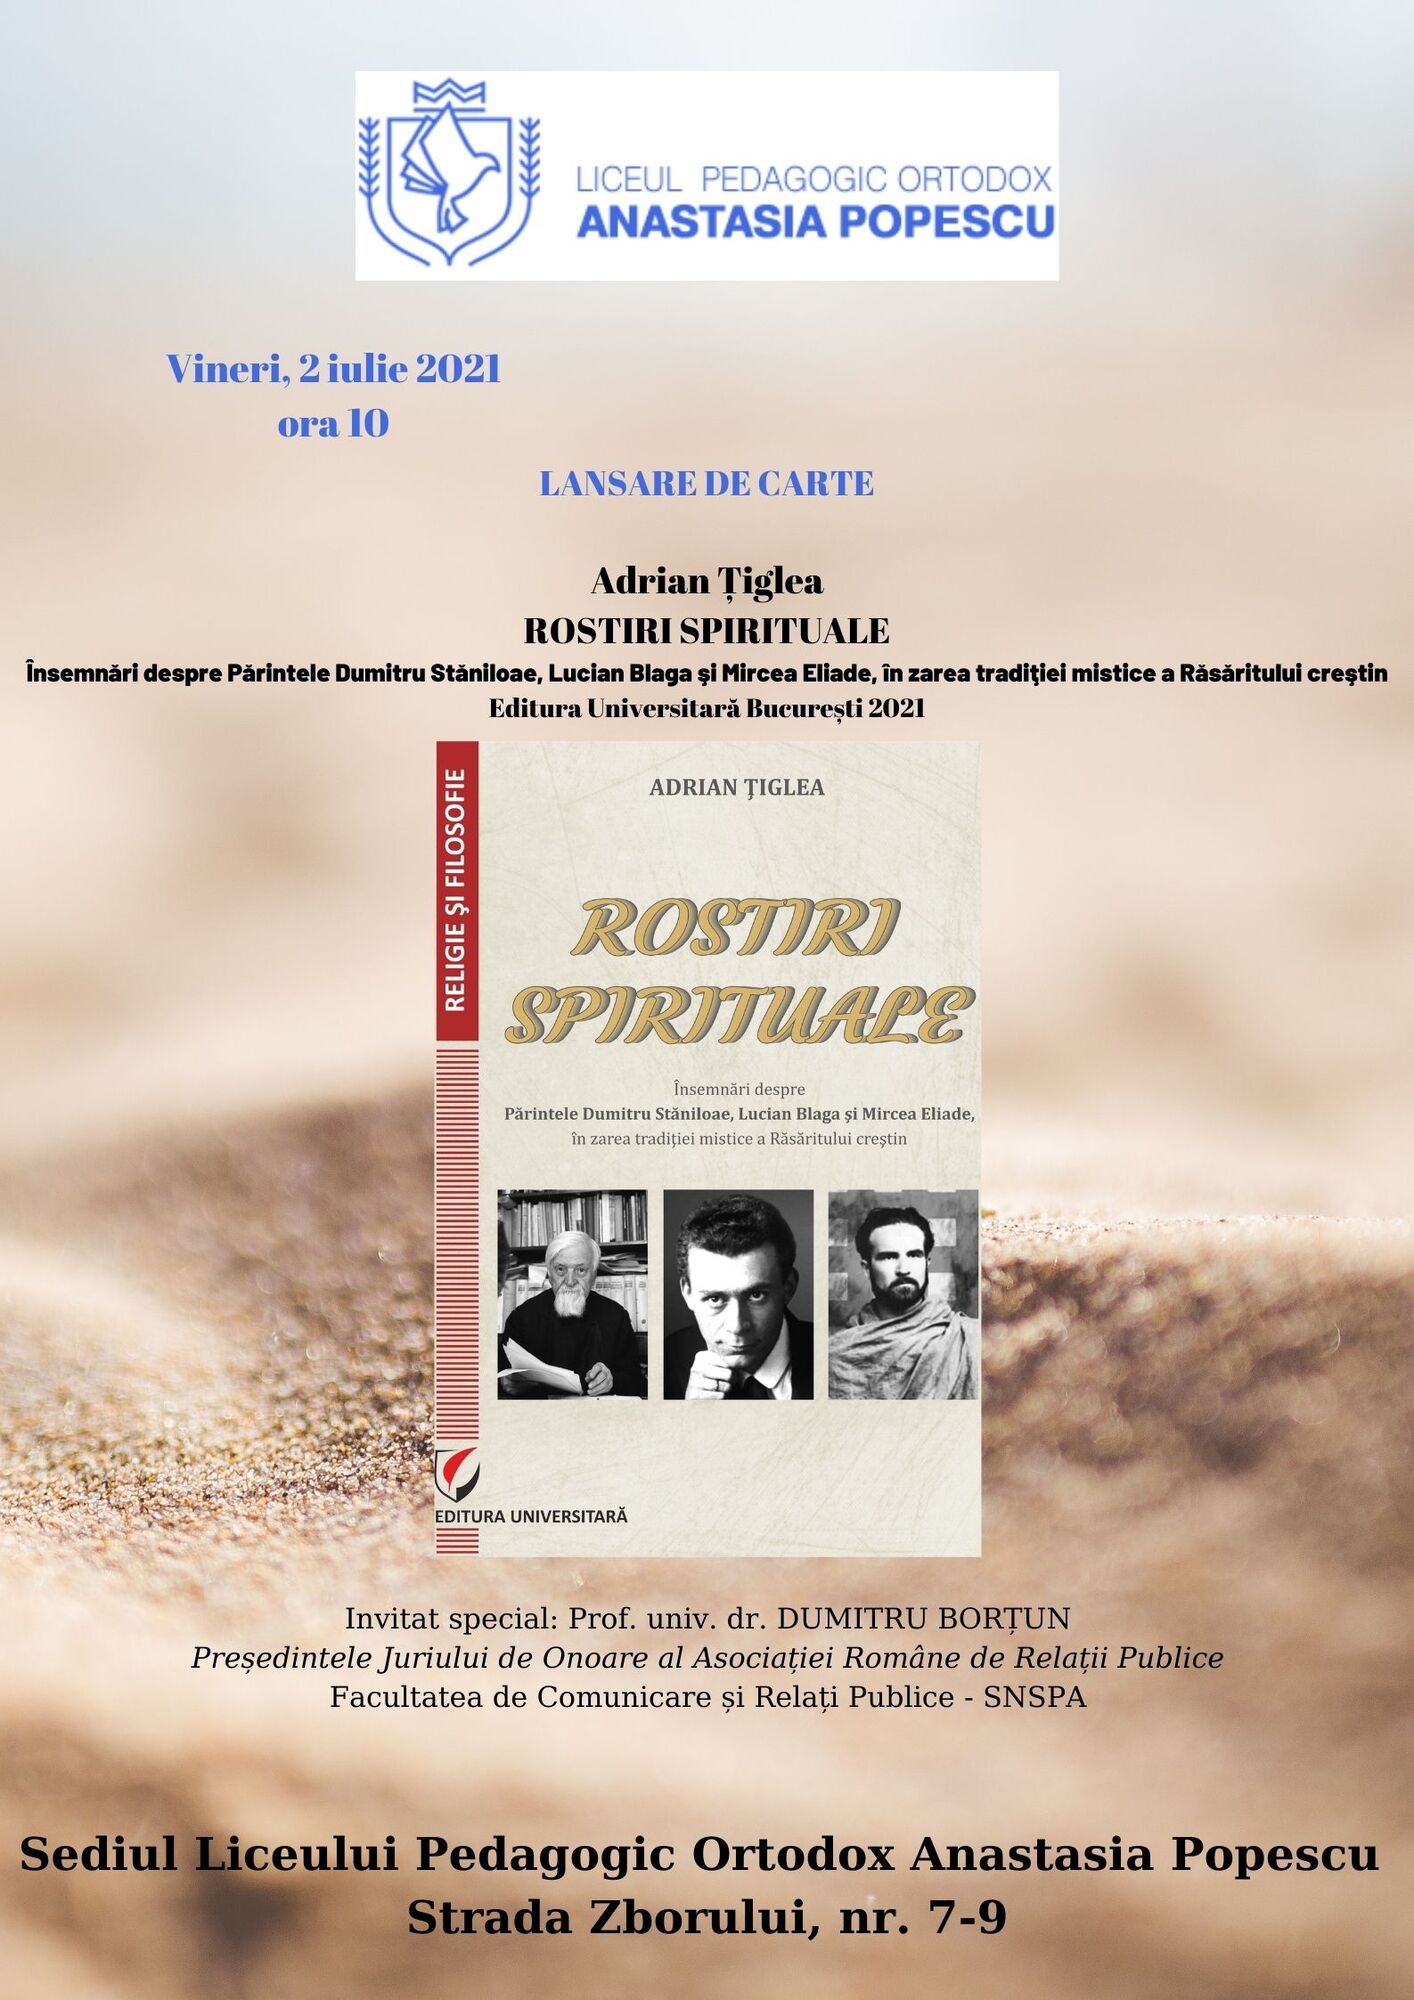 Lansare de carte - Rostiri spirituale - Adrian Tiglea, 2 iulie 2021